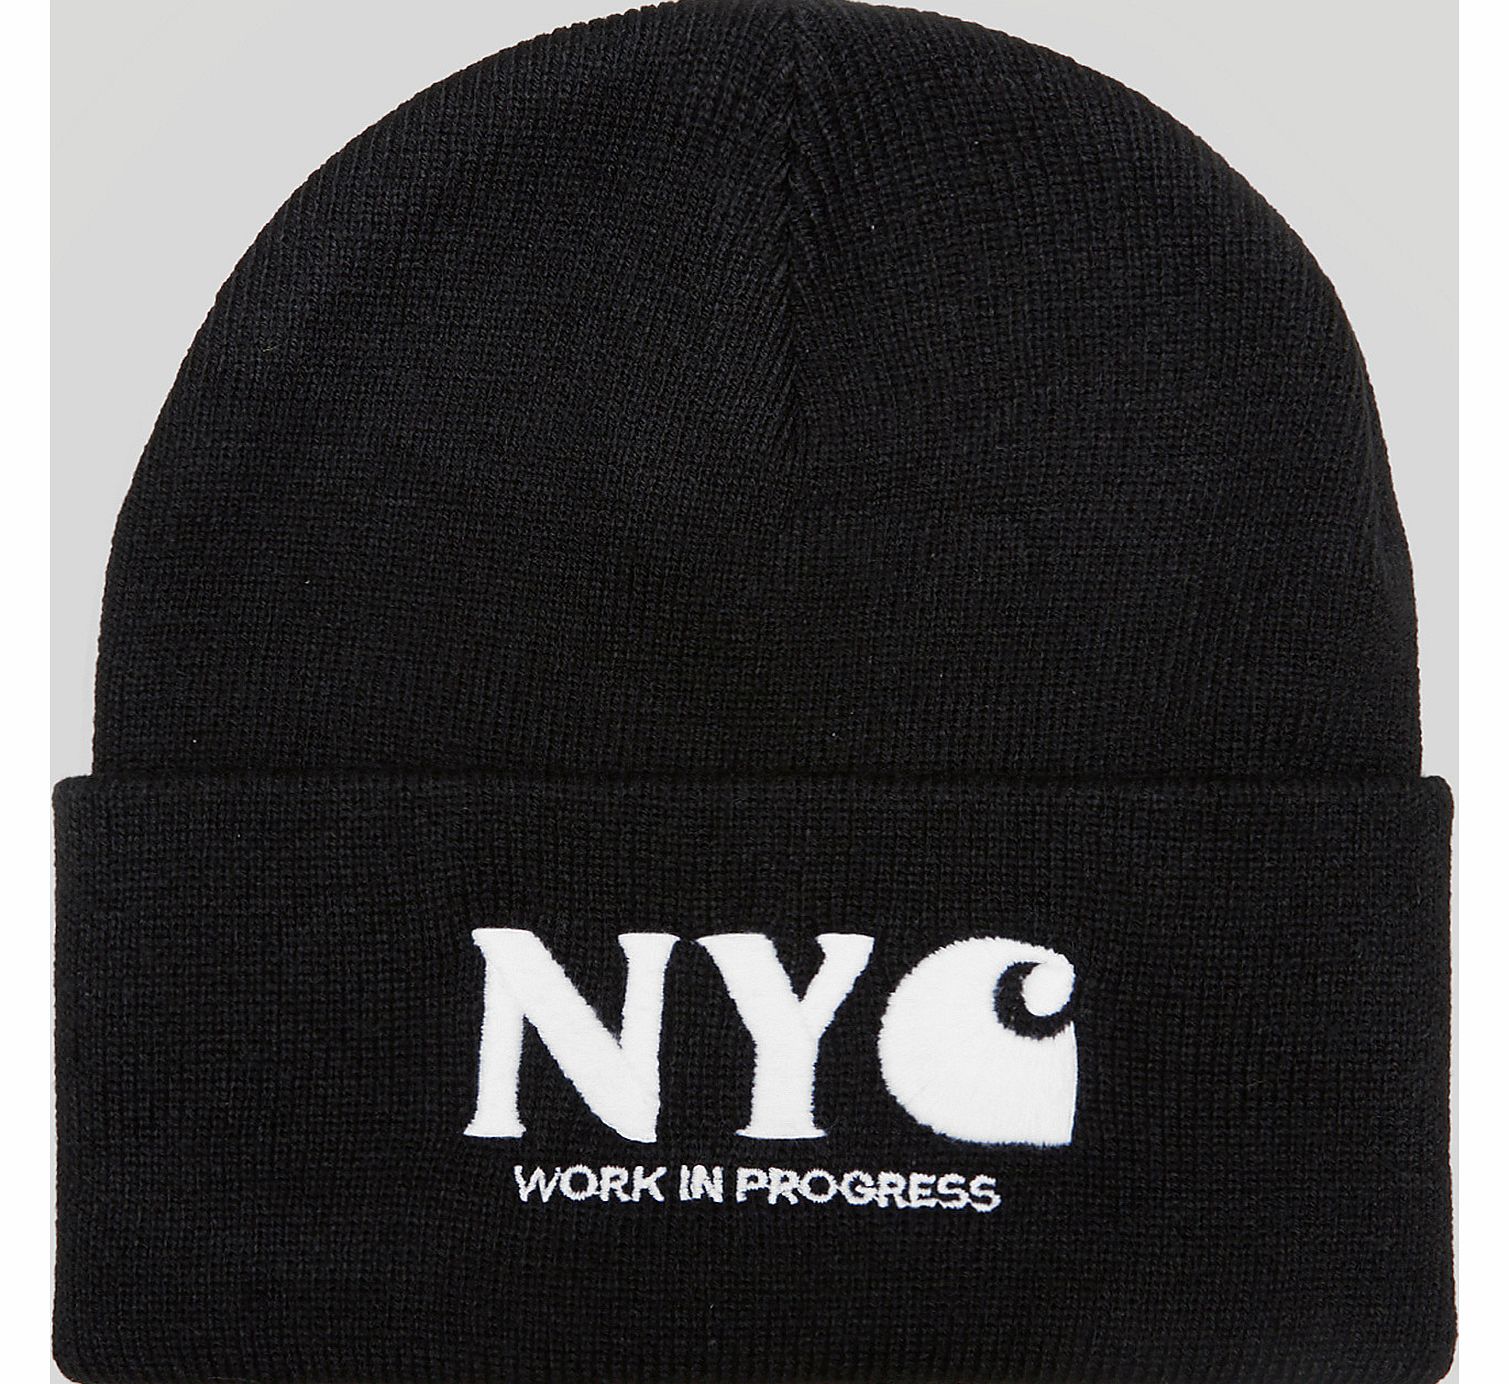 New York Beanie Hat